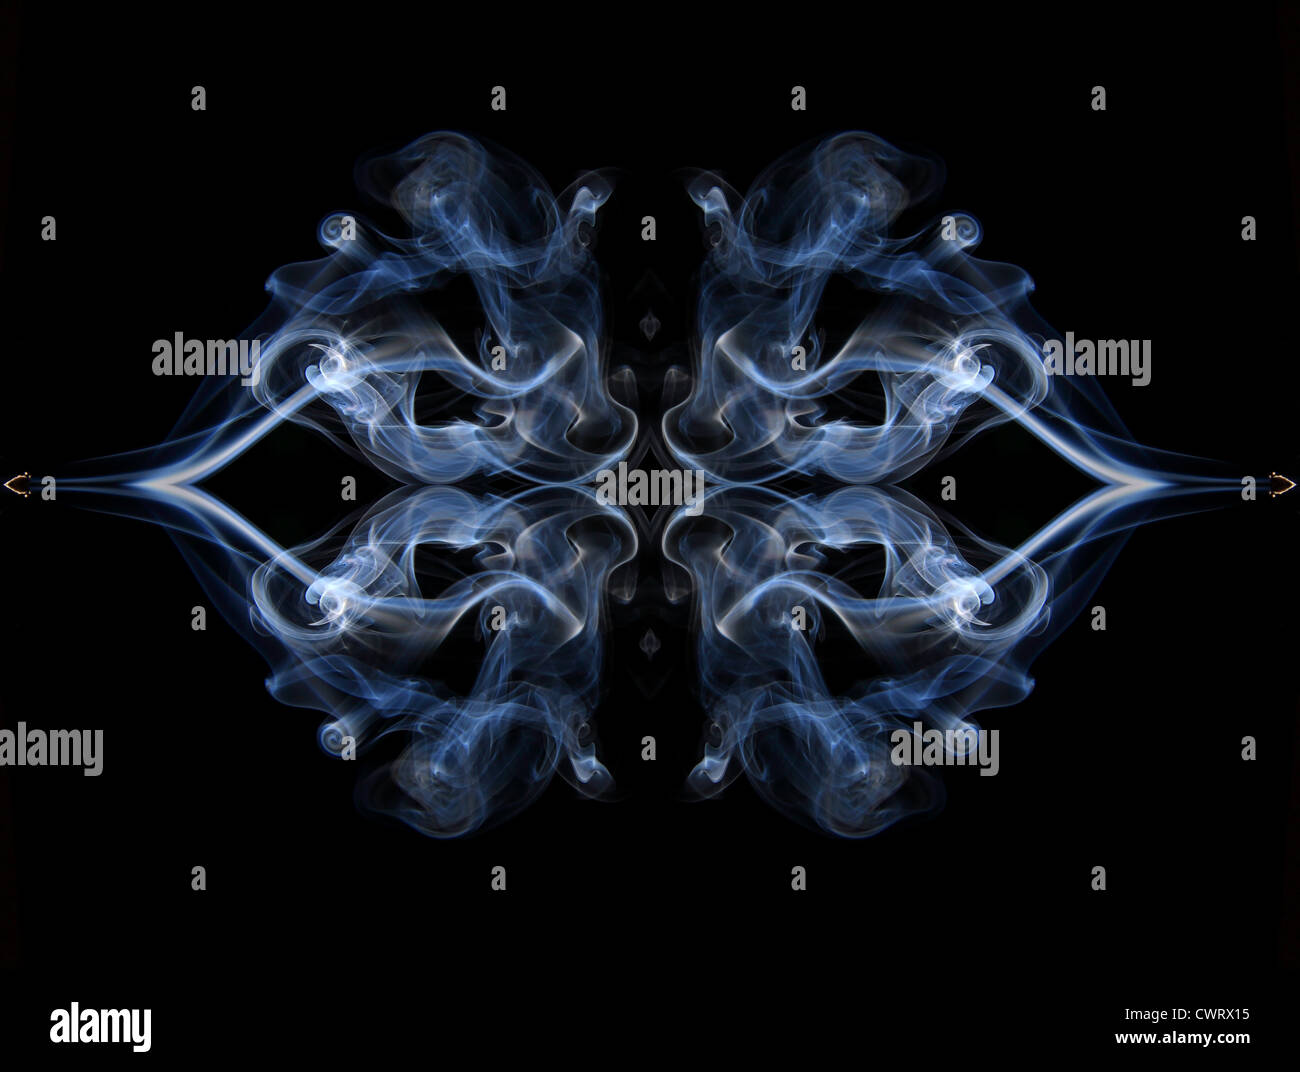 Résumé : La symétrie de la fumée bleue sur fond noir Banque D'Images